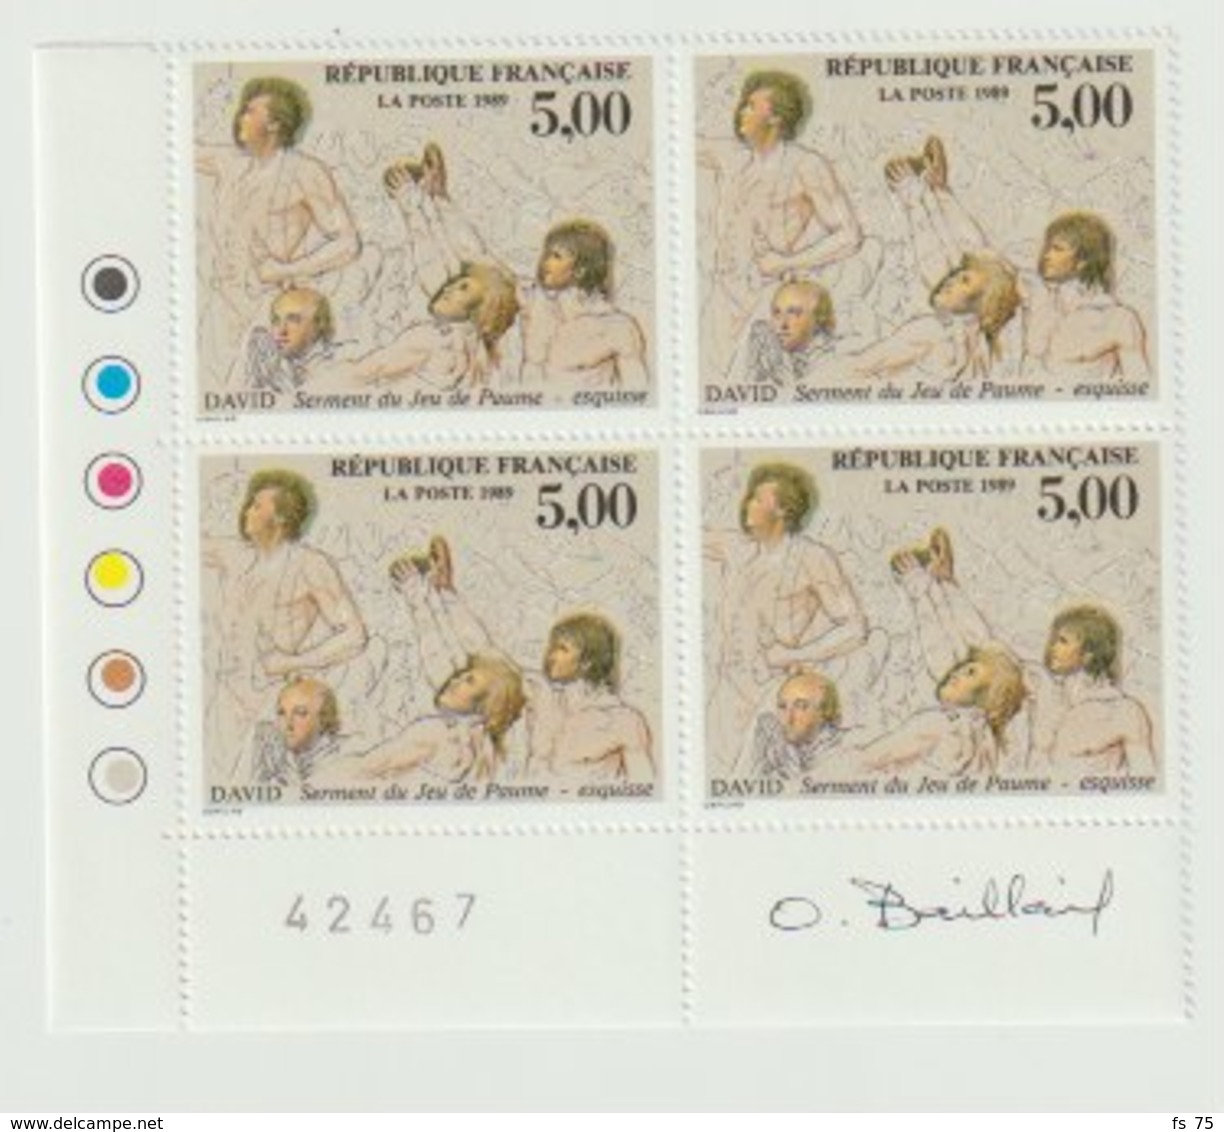 FRANCE - N°2591 - 5F - BICENTENAIRE DE LA DECLARATION DES DROITS DE L'HOMME - BLOC DE 4 - SIGNE O. BAILLAIT - Unused Stamps